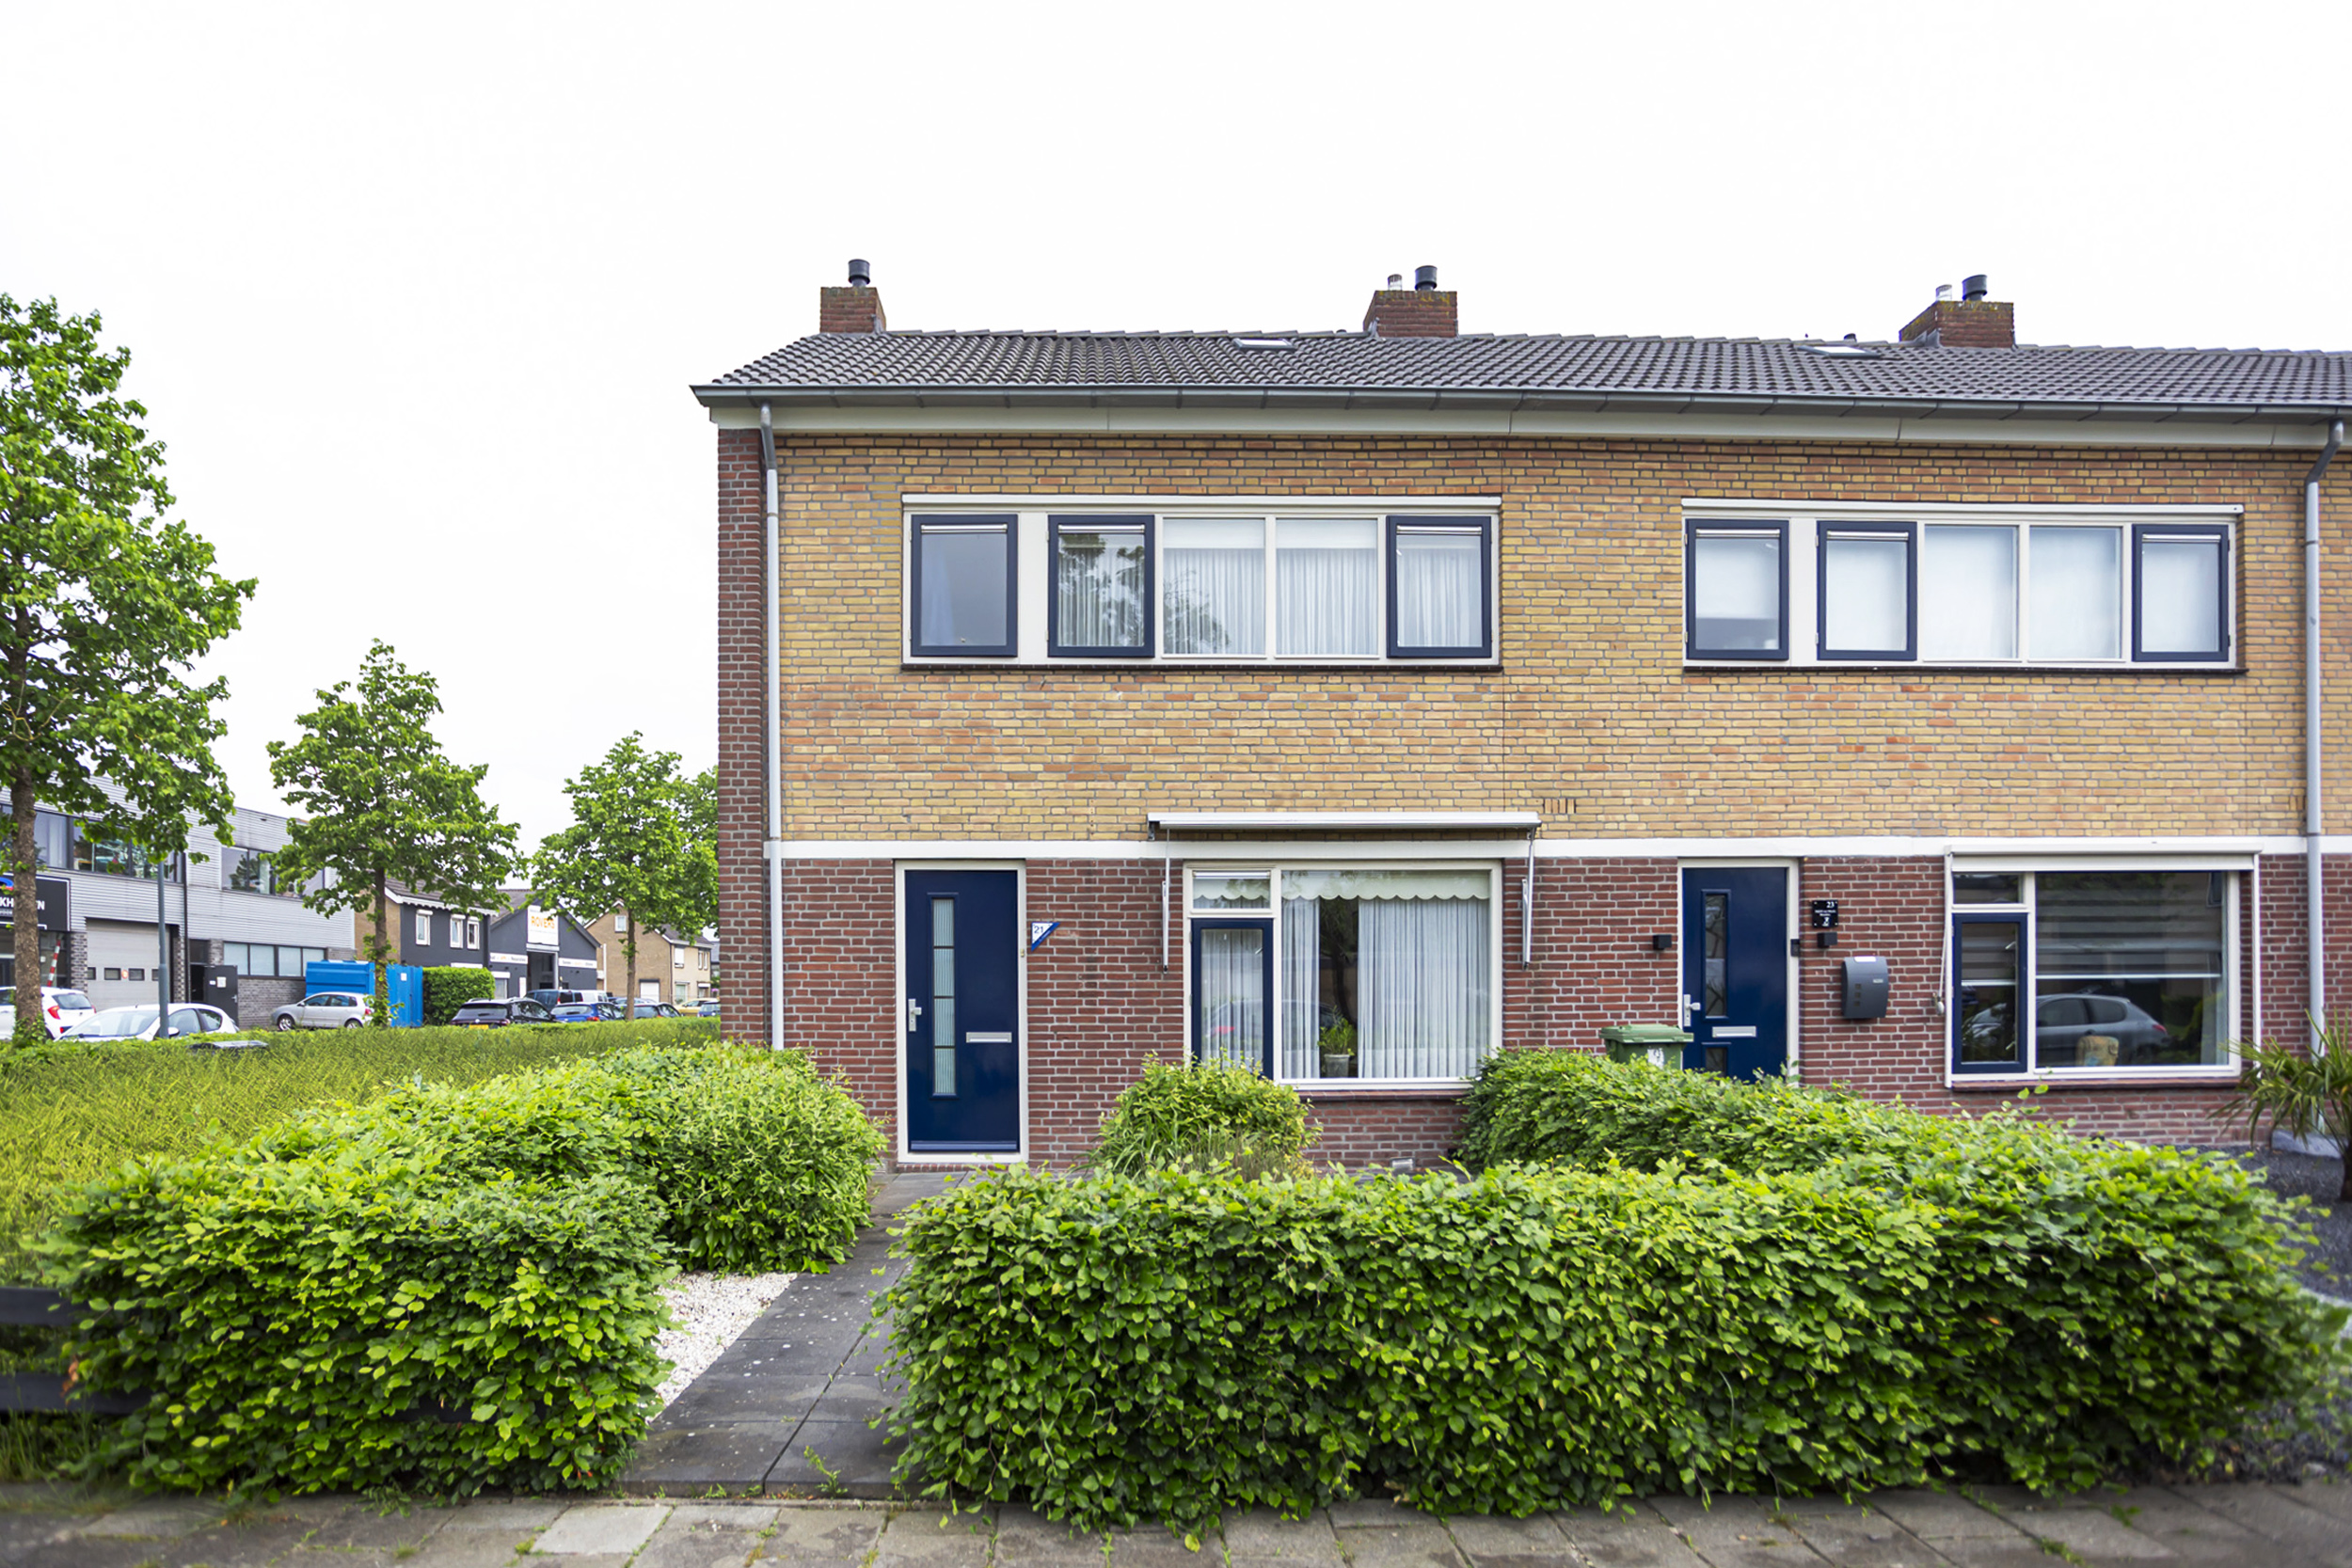 Van Duivenvoordestraat 21, 4901 VT Oosterhout, Nederland